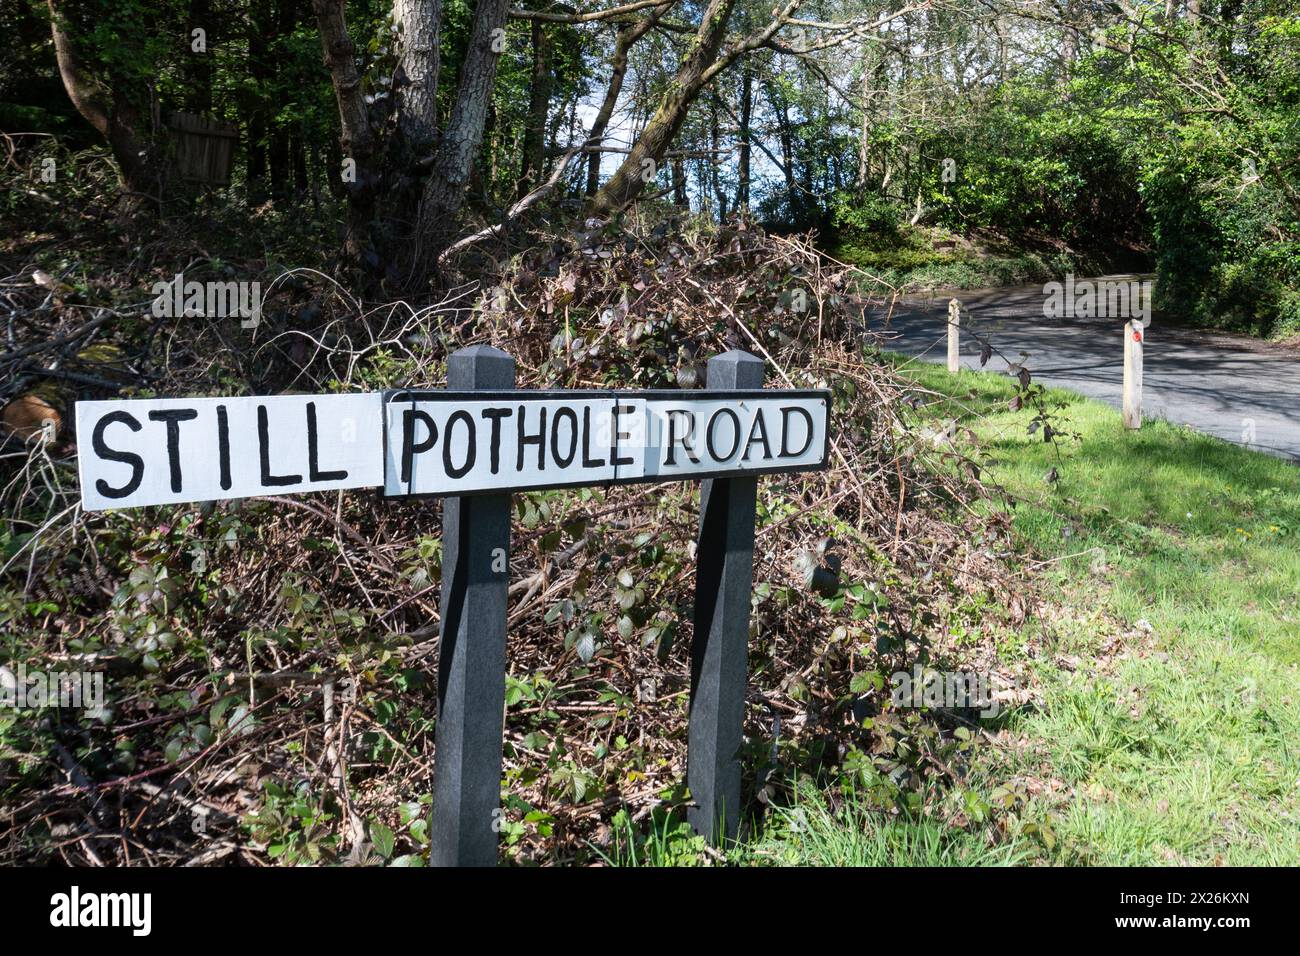 Panneau routier avec le nom de rue réel remplacé par les mots Still Pothole Road probablement par un conducteur local frustré par les nids de poule non réparés, Royaume-Uni Banque D'Images